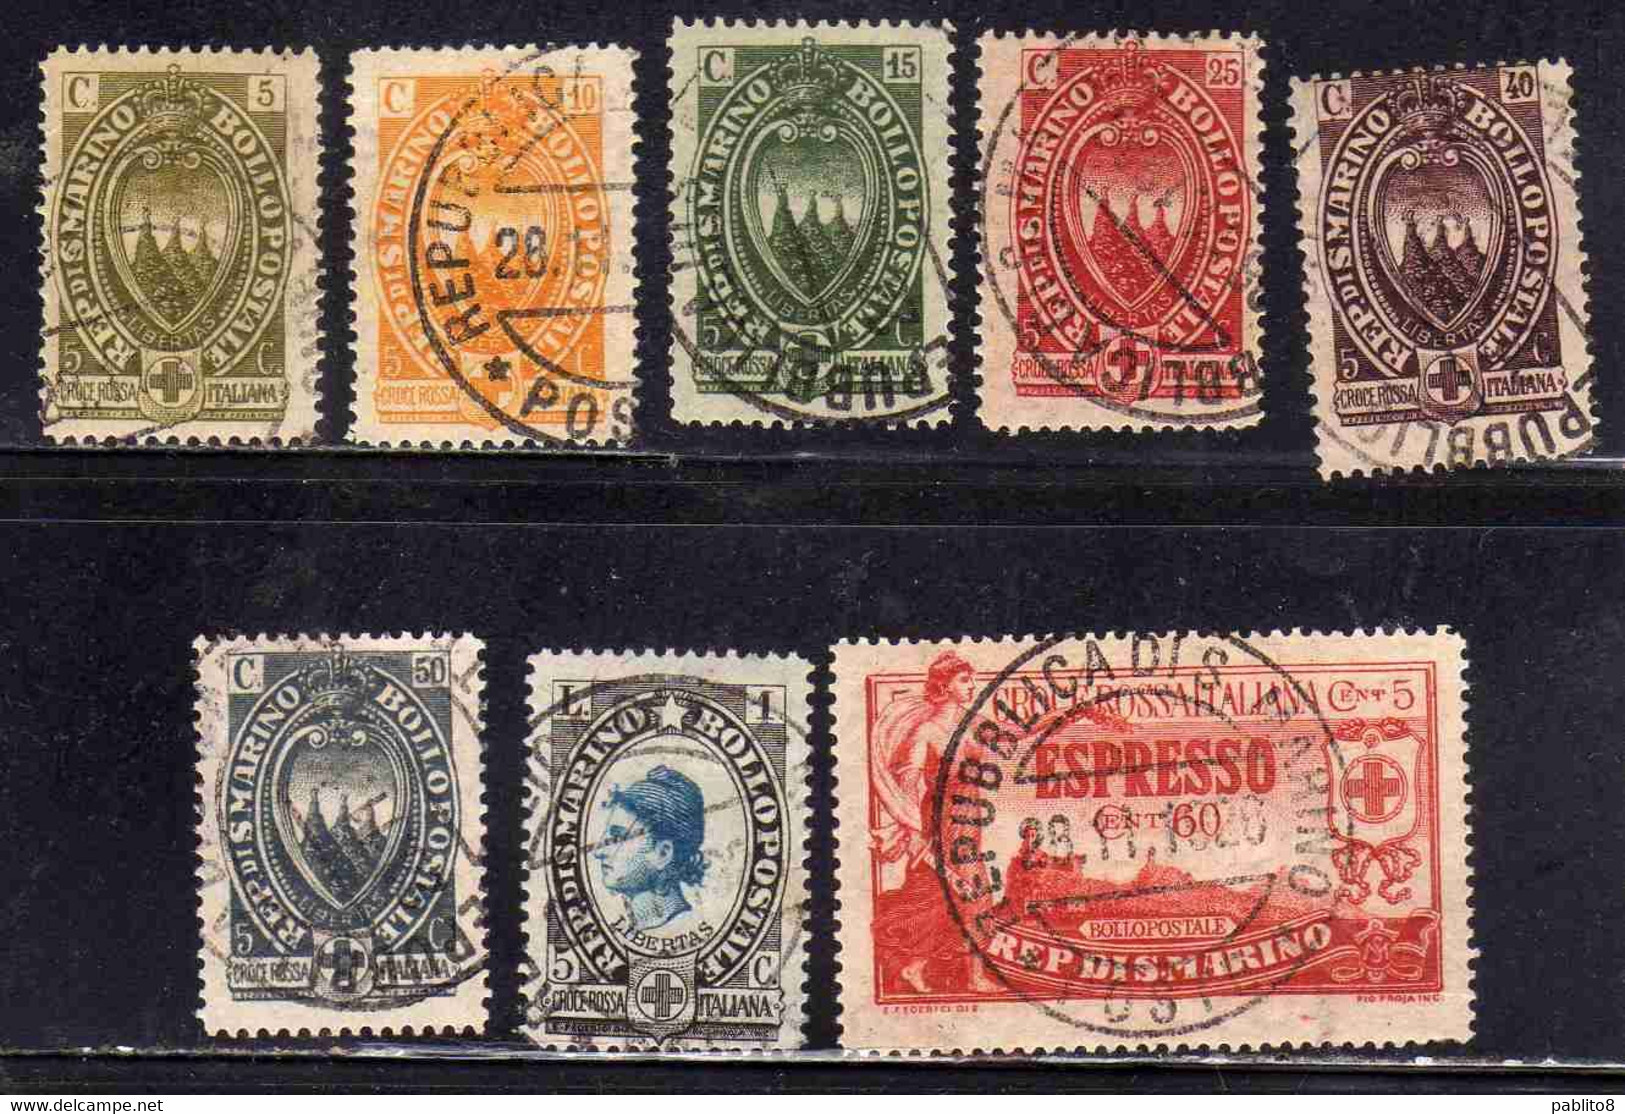 REPUBBLICA DI SAN MARINO 1923PRO CROCE ROSSA ITALIANA ITALIAN RED CROSS SERIE COMPLETA COMPLETE SET USATA USED OBLITERE' - Used Stamps